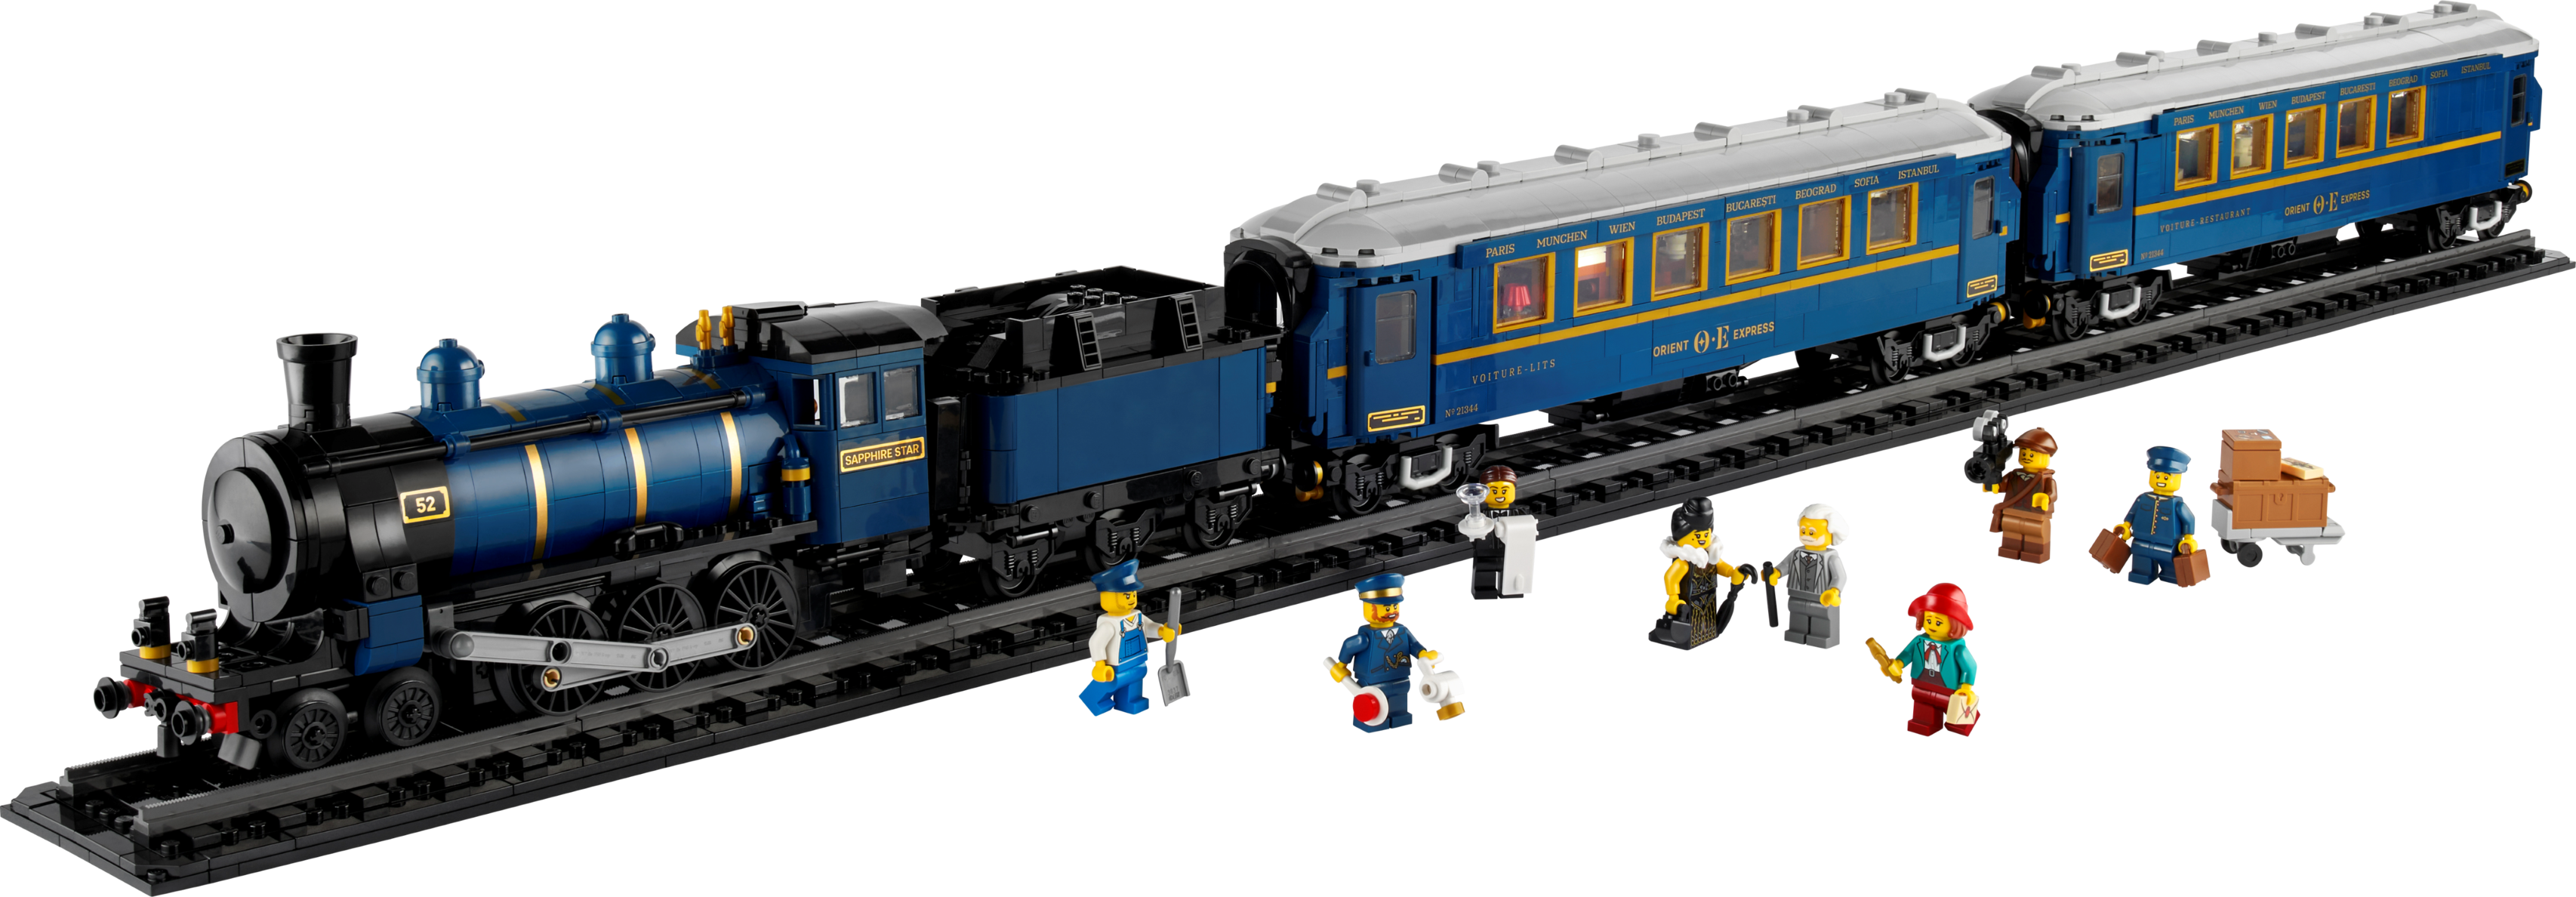 Le train Orient-Express offre à 299,99€ sur LEGO